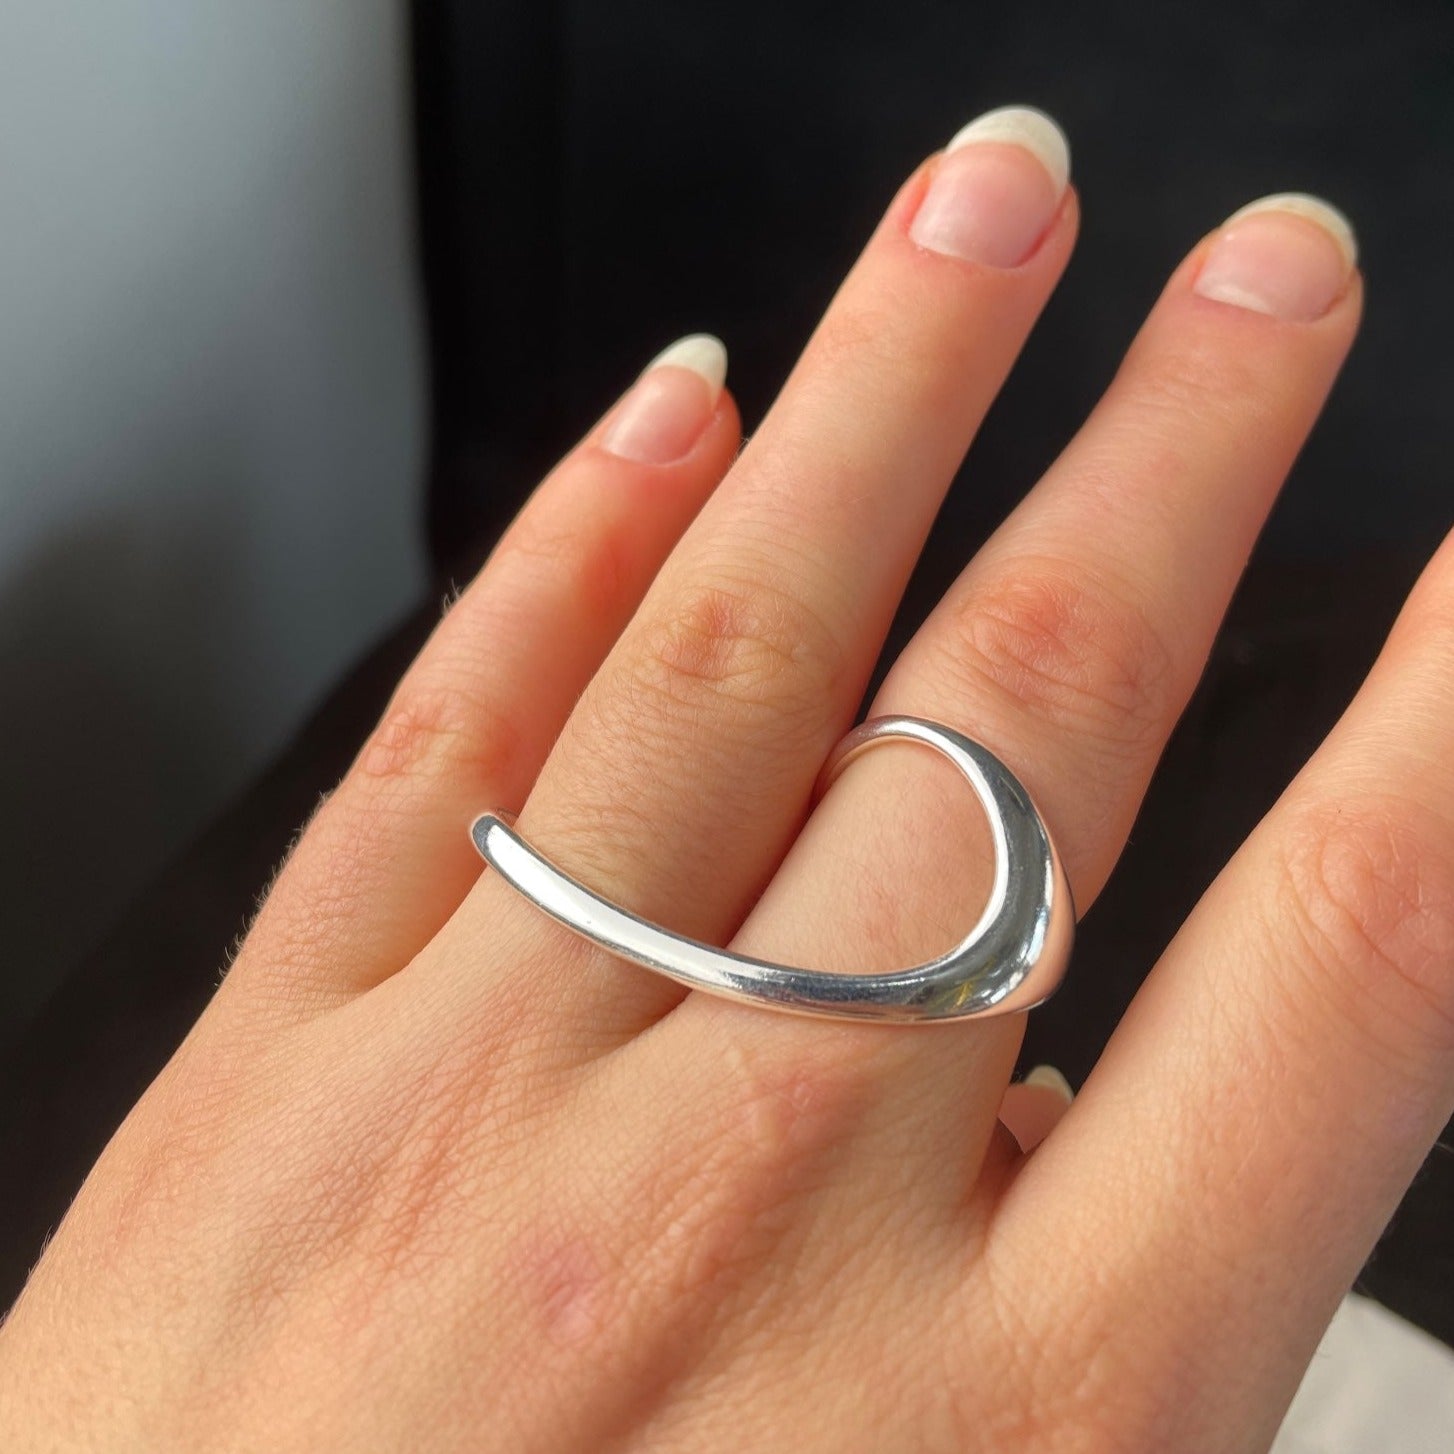 Two Finger Ring, Double Finger Ring, Sterling Silver Ring, High Quality CZ  Ring, .925 Two Finger Ring, CZ Ring, - Etsy